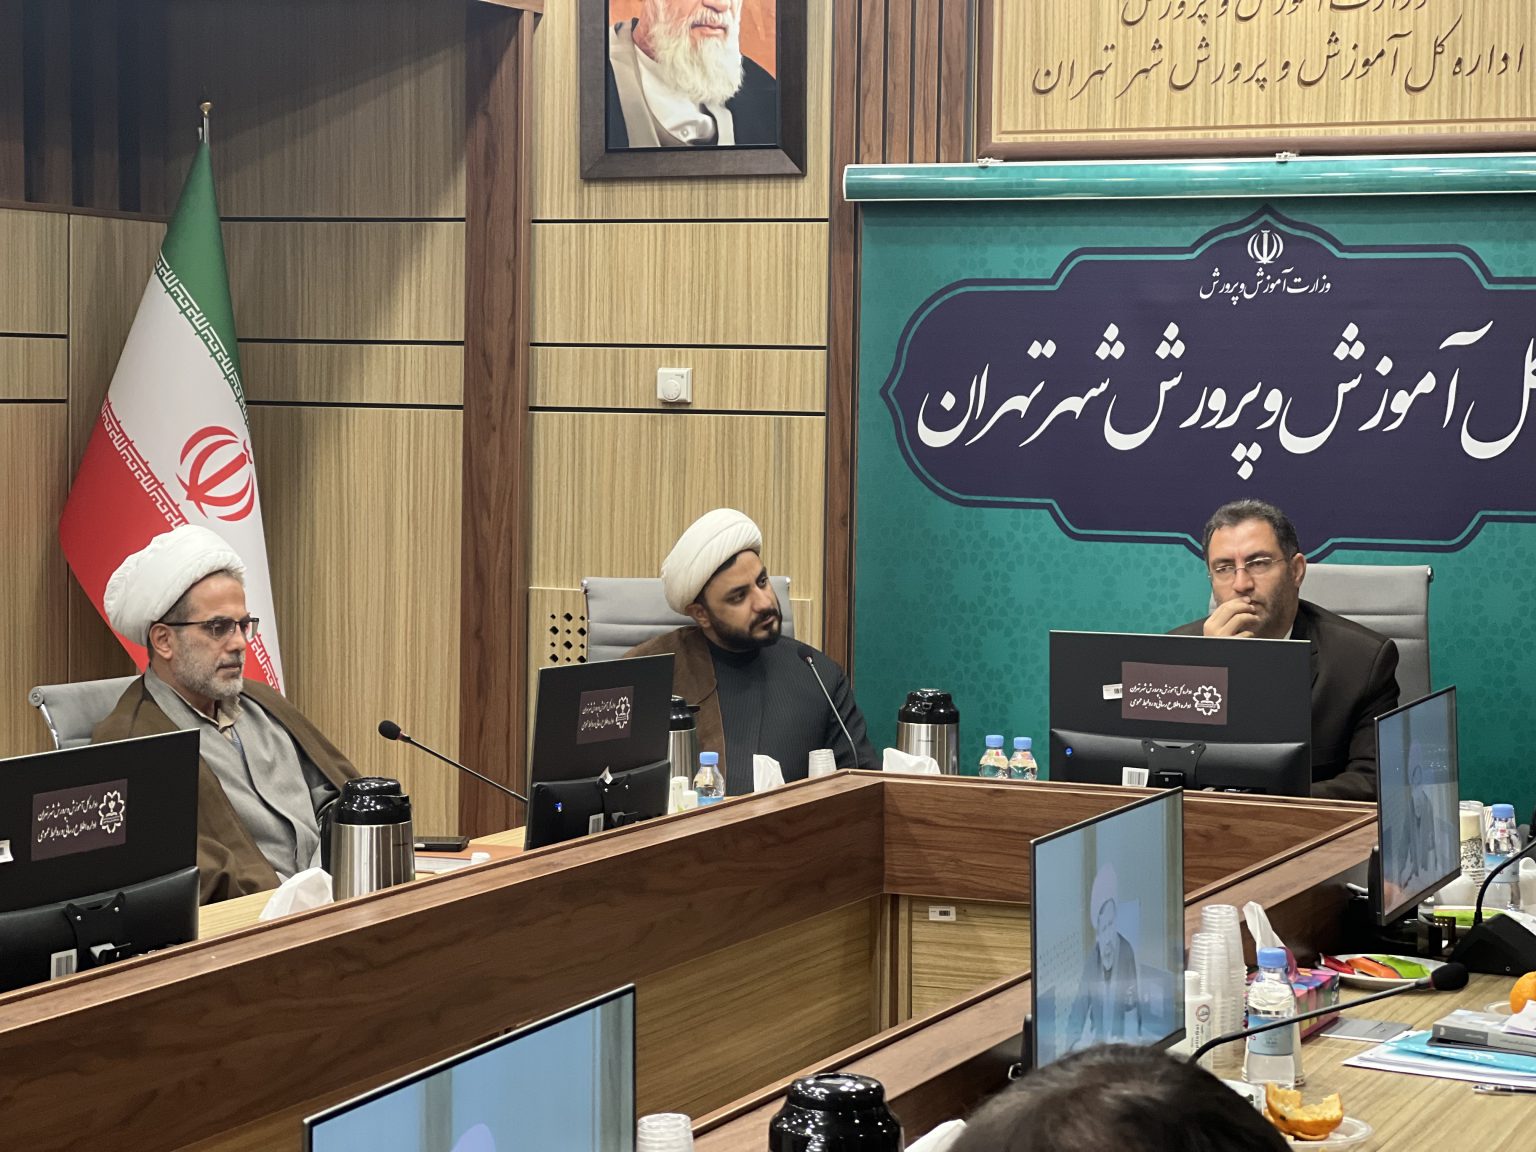 جلسه قرار گاه تربیتی جهاد تبیین استان تهران در اداره کل آموزش و پرورش برگزار شد